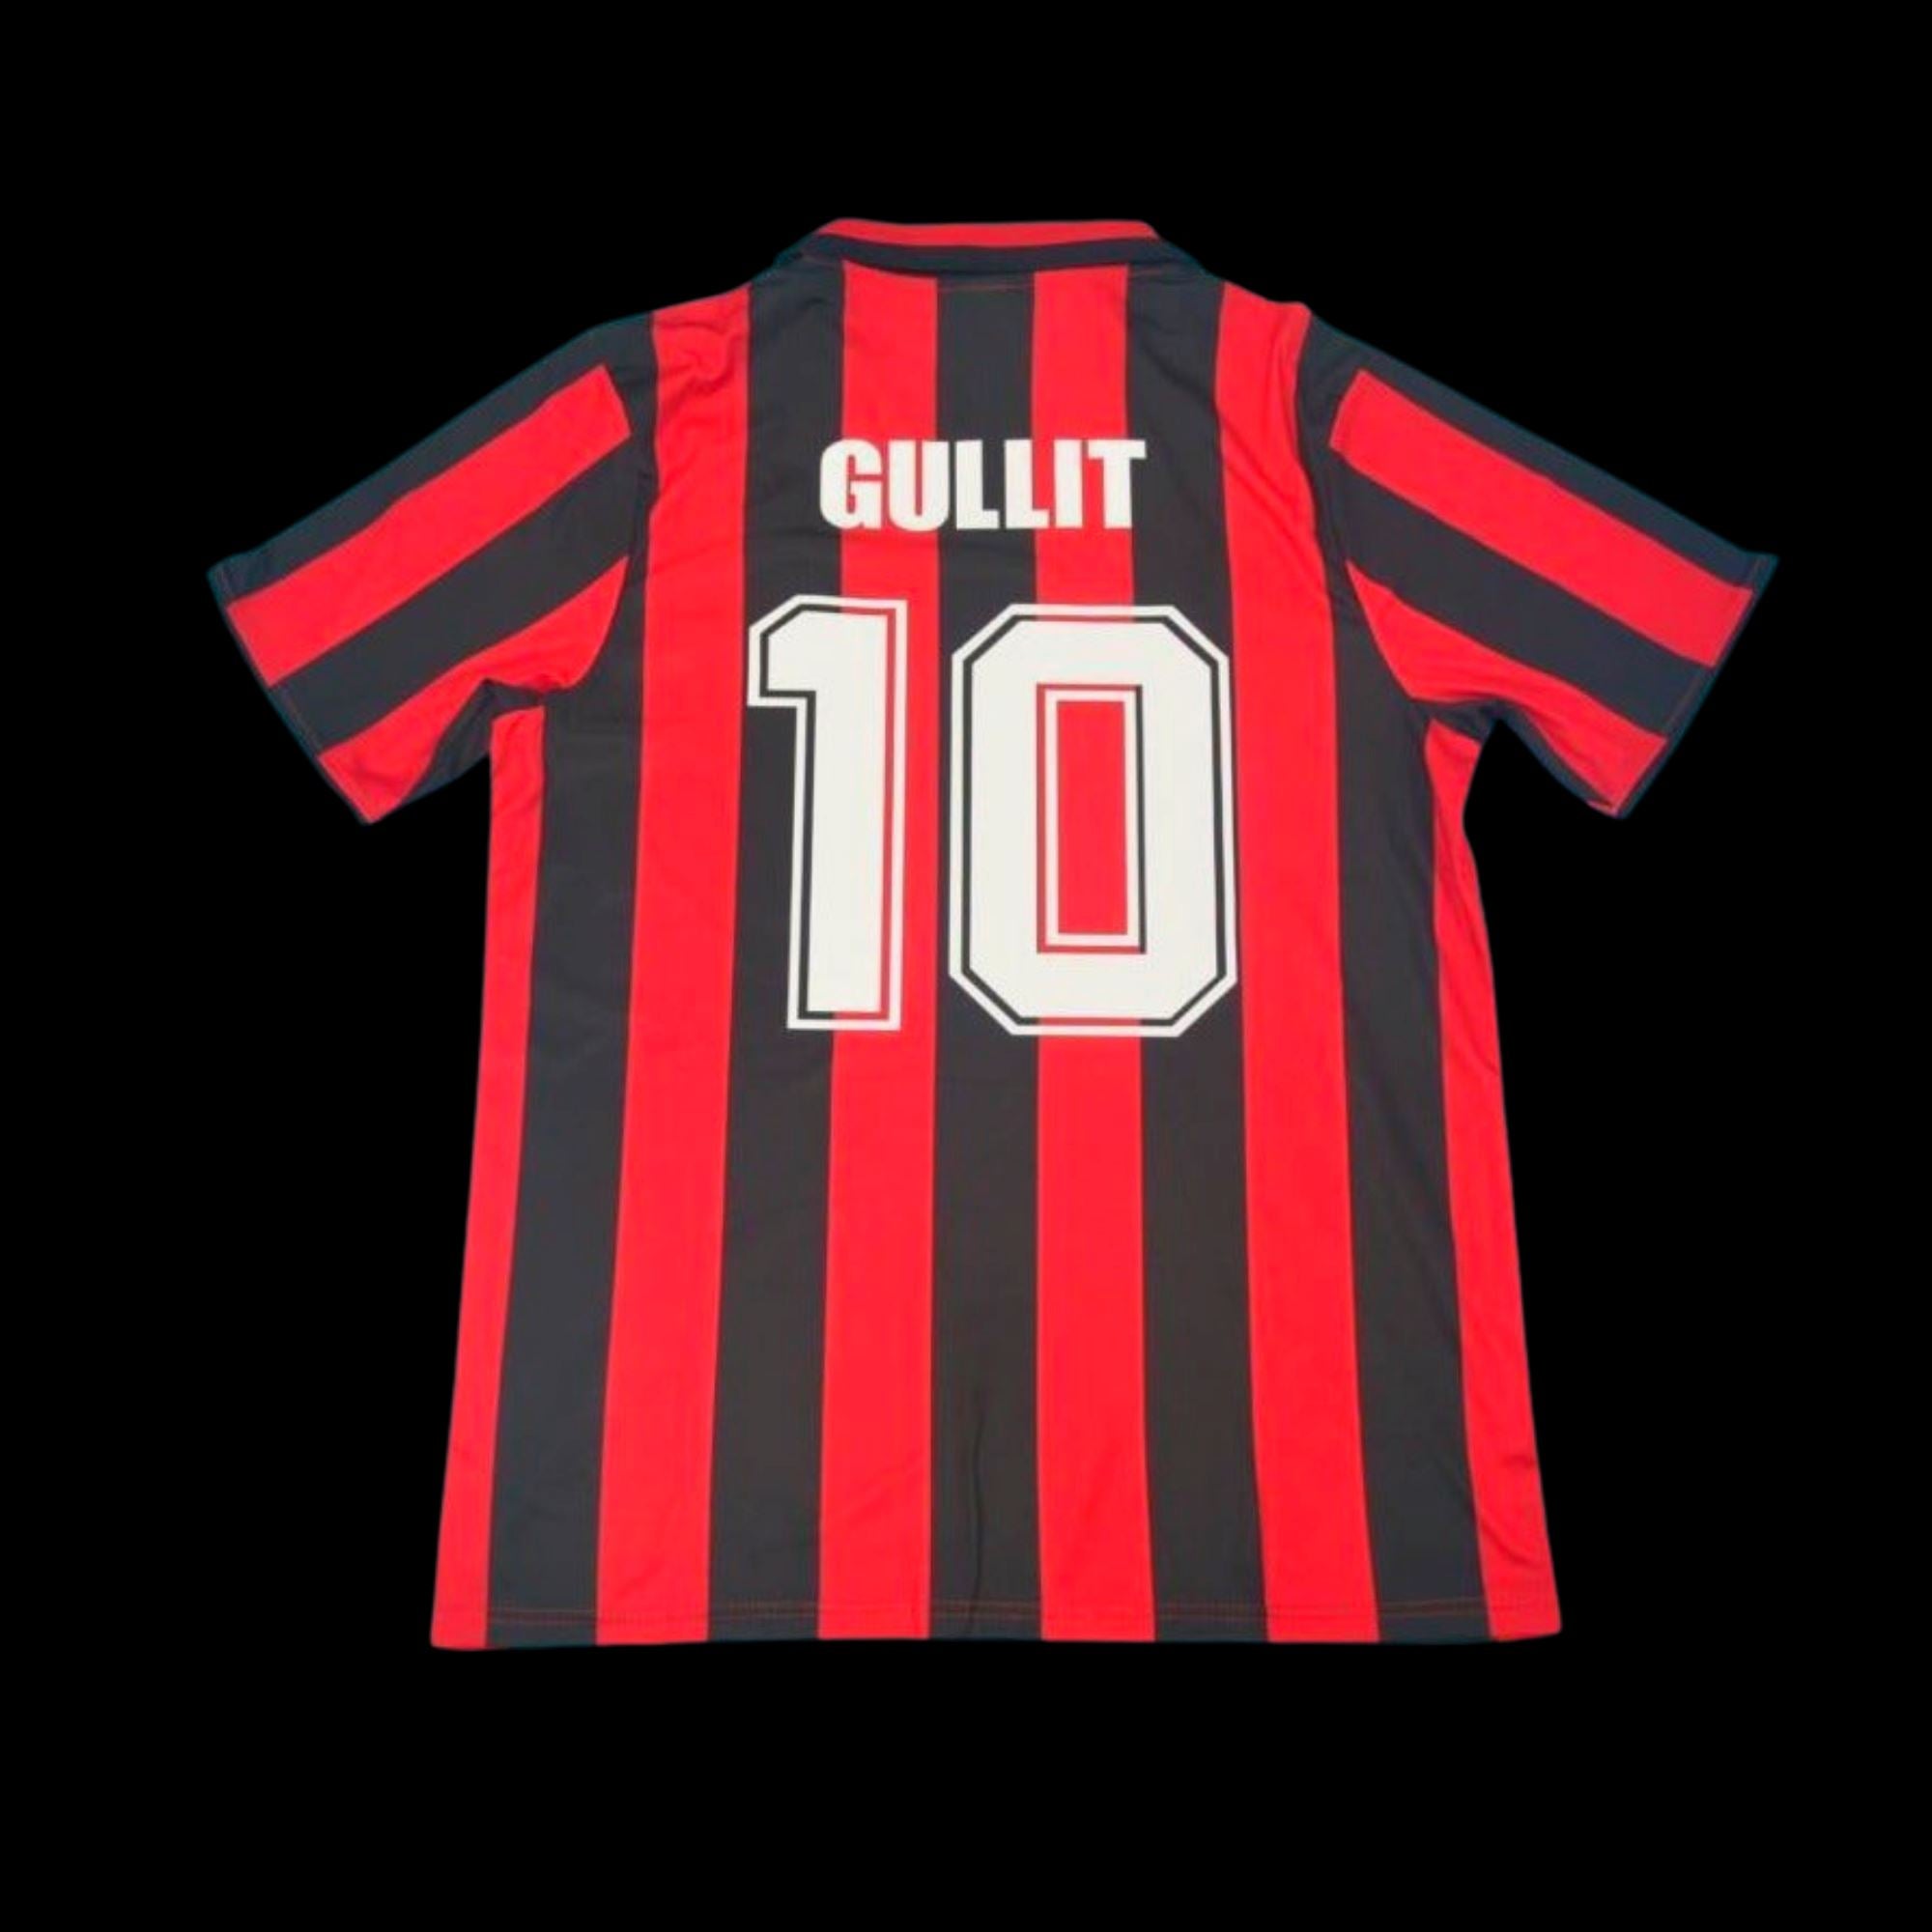 1988/89 AC Milan Home Jersey, 88/89 AC Milan Shirt